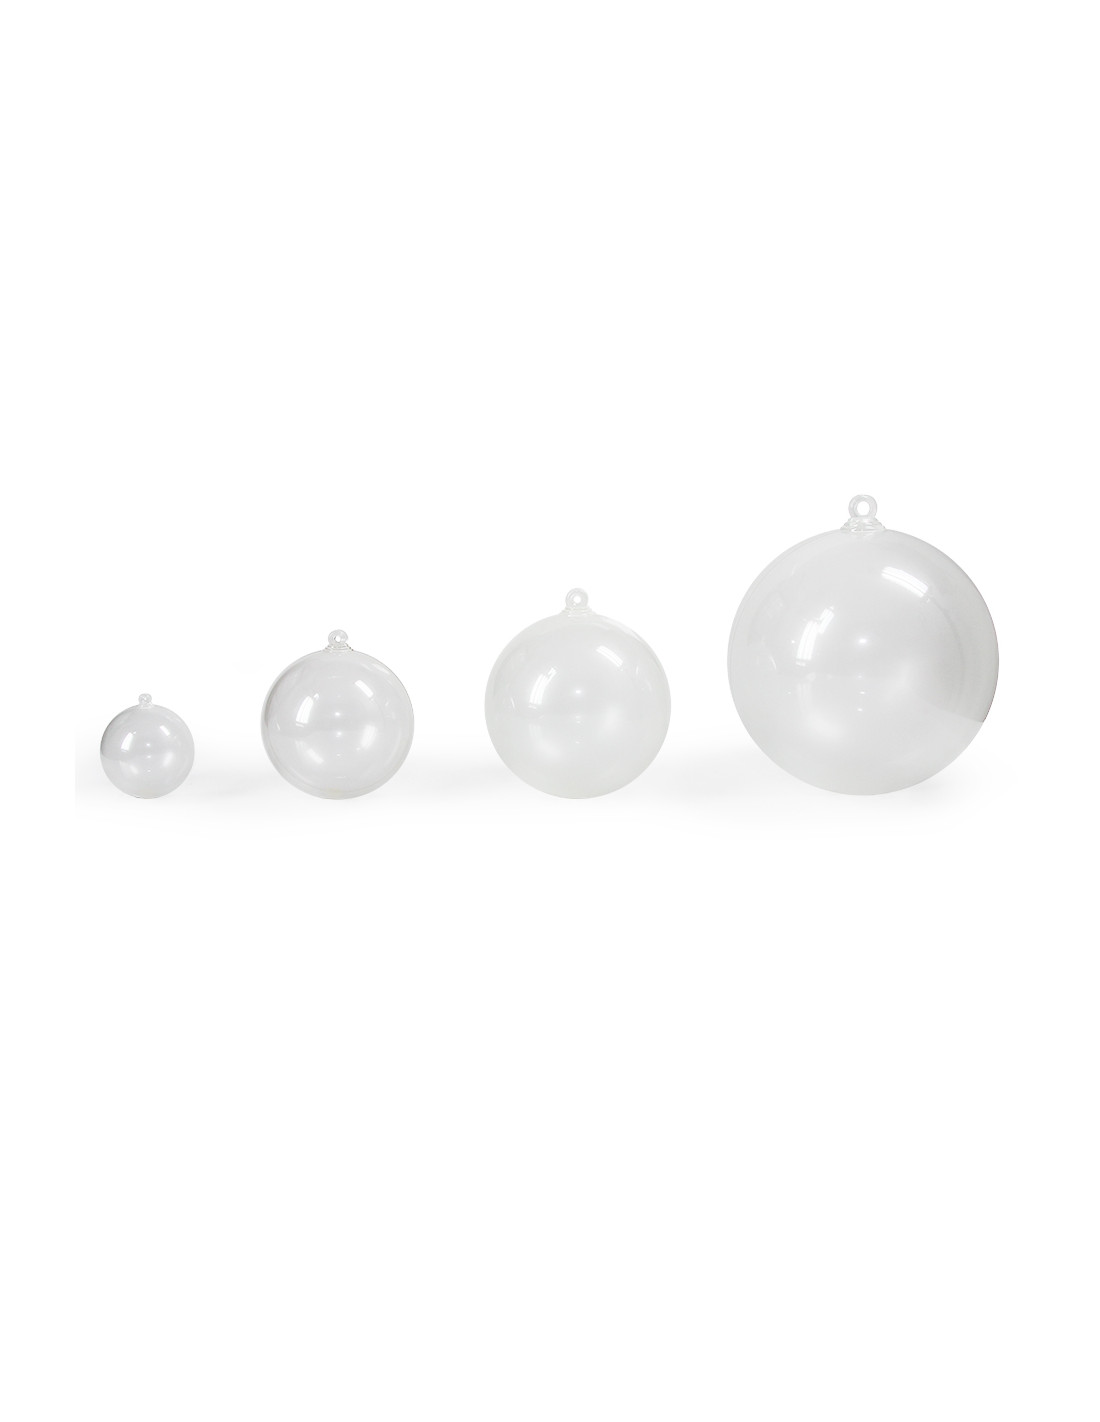 Maak leven hebben de sneeuw Fosforescerende bal lichtgevende plastic deelbare bal kopen